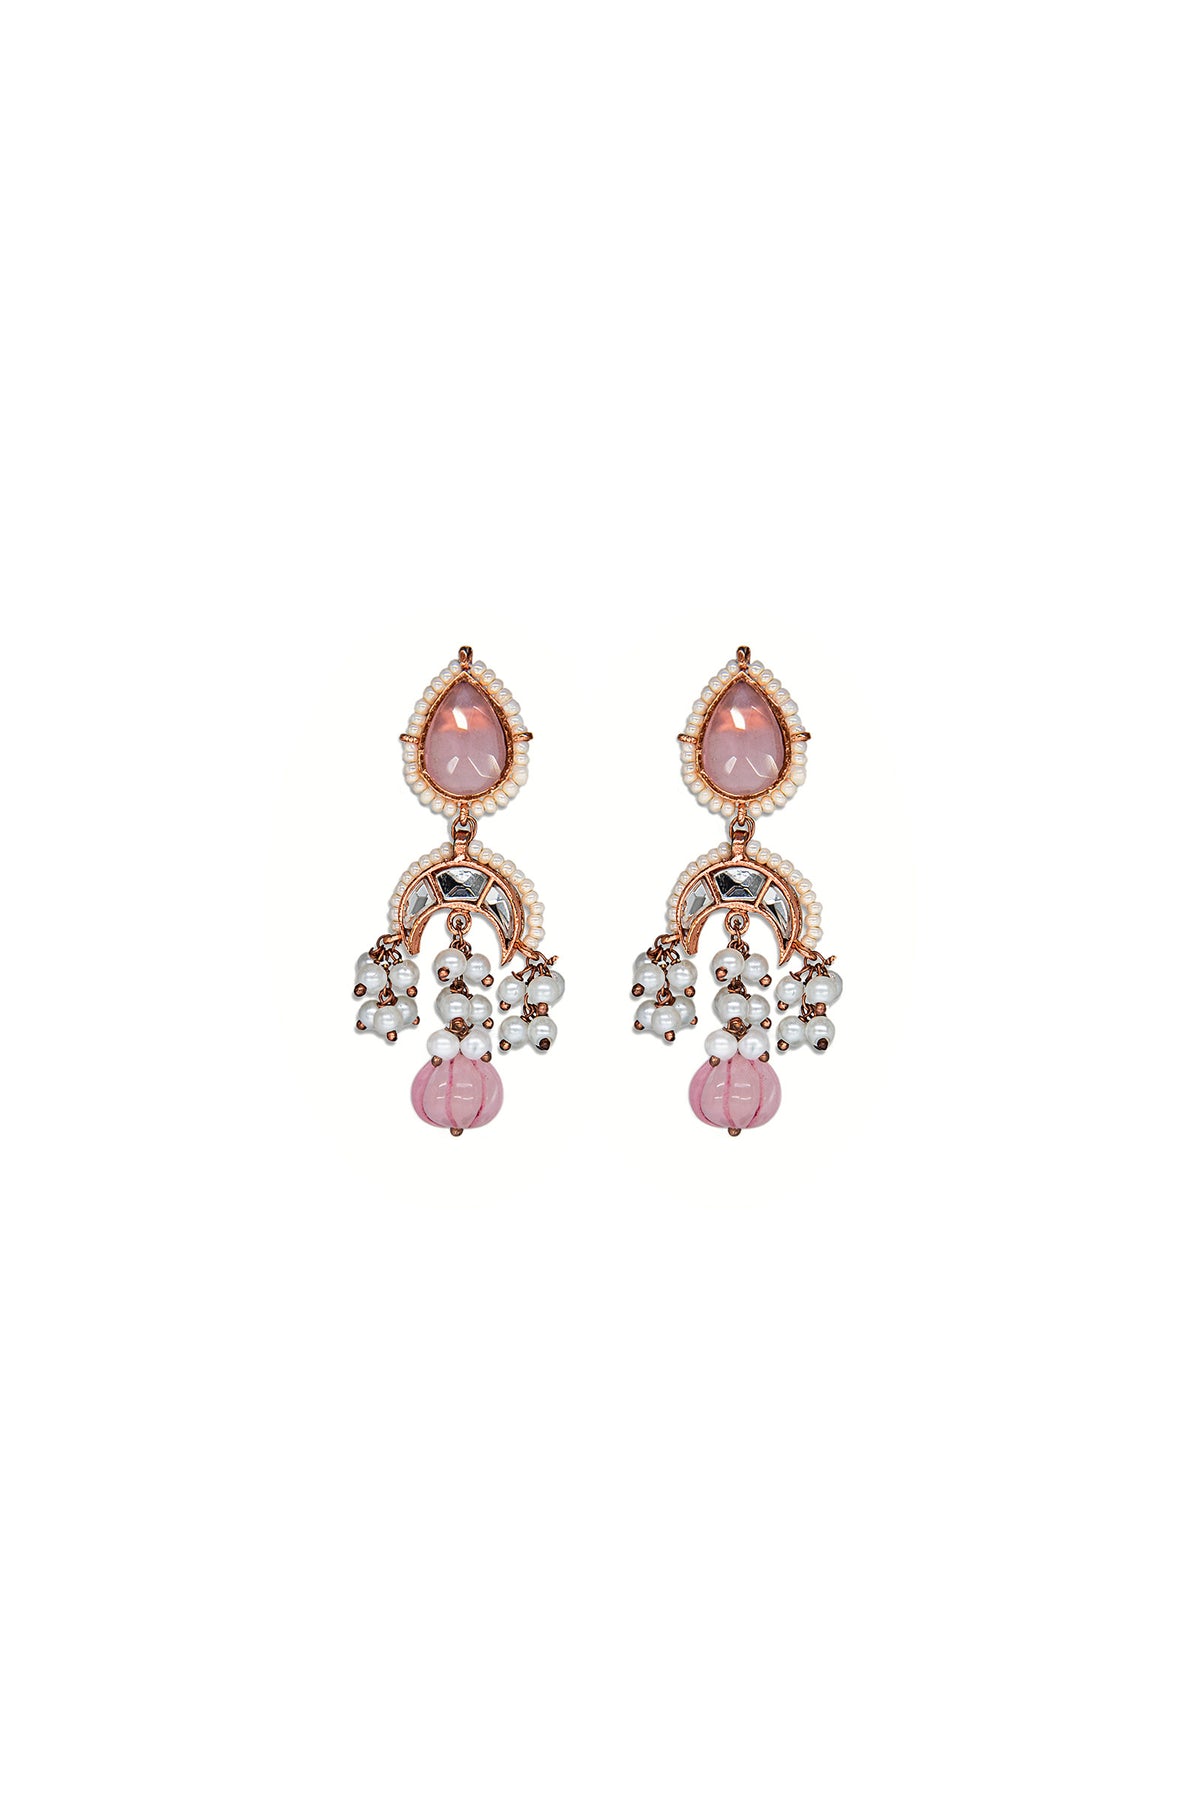 JER-087-Pink quartz – Maria.B. Designs (PK)